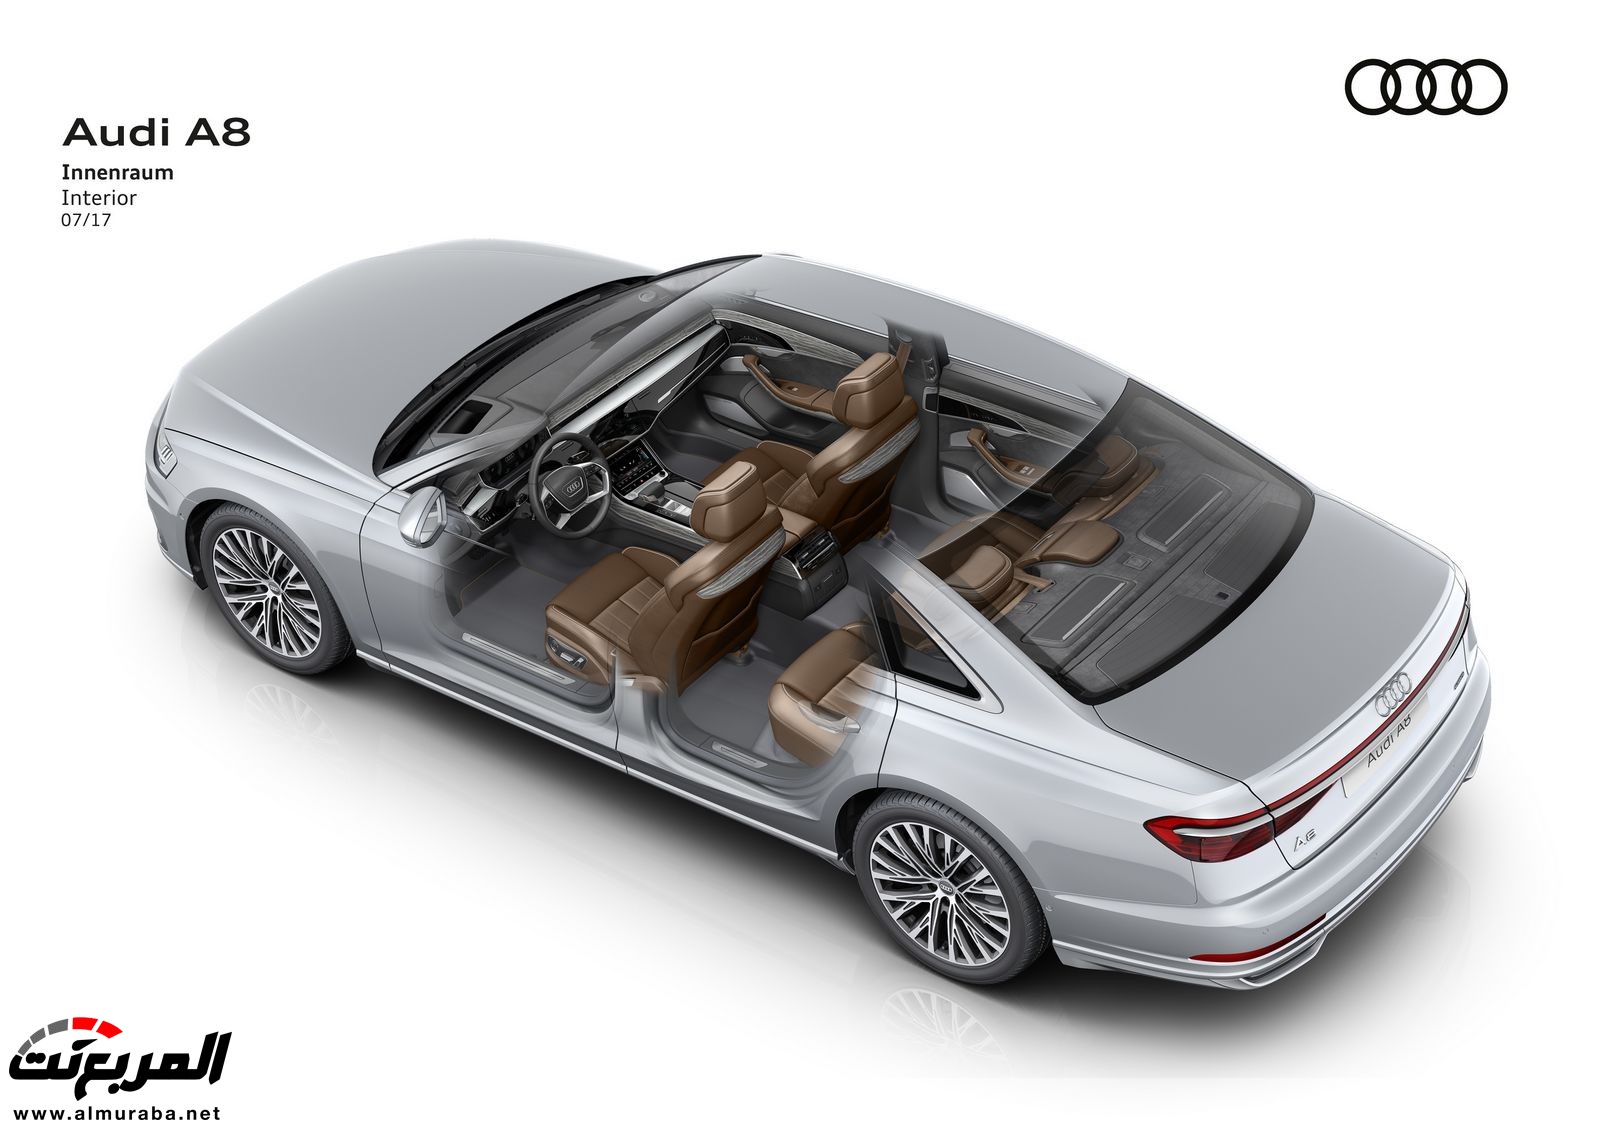 أودي A8 2018 الجديدة كلياً تكشف نفسها بتصميم وتقنيات متطورة "معلومات + 100 صورة" Audi A8 87